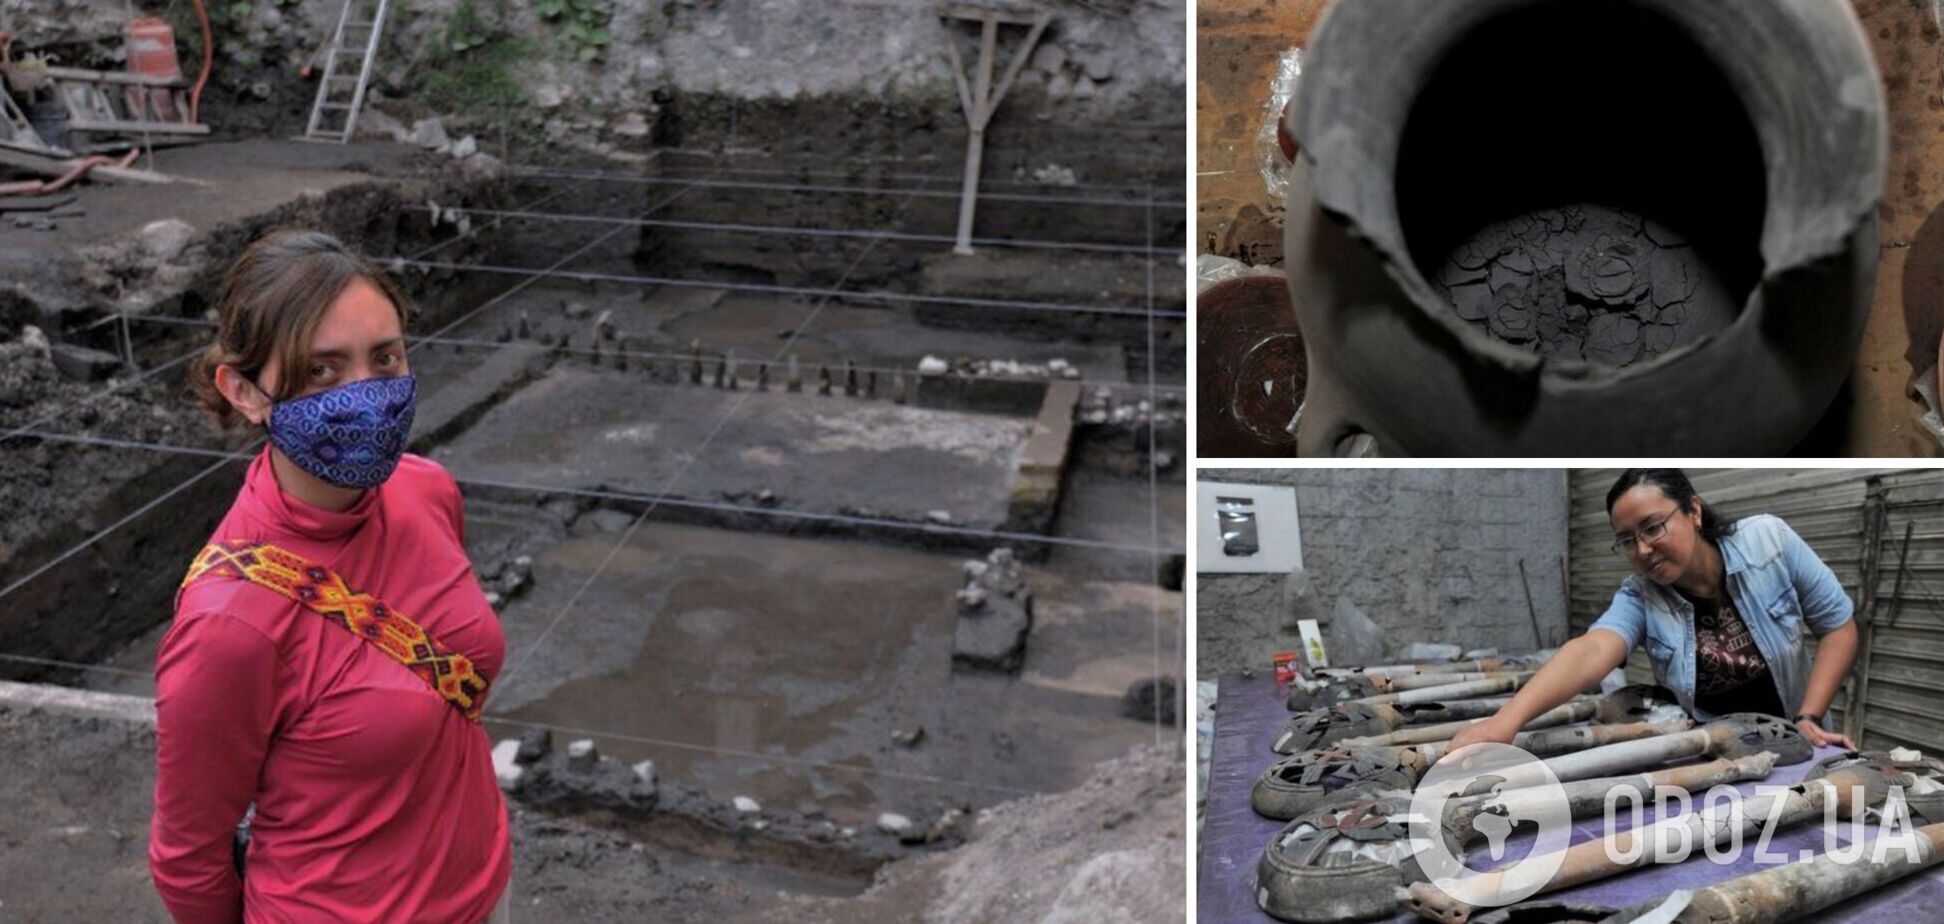 Археологи обнаружили в Мексике алтарь ацтеков: там хранился горшок с человеческим прахом. Фото и видео